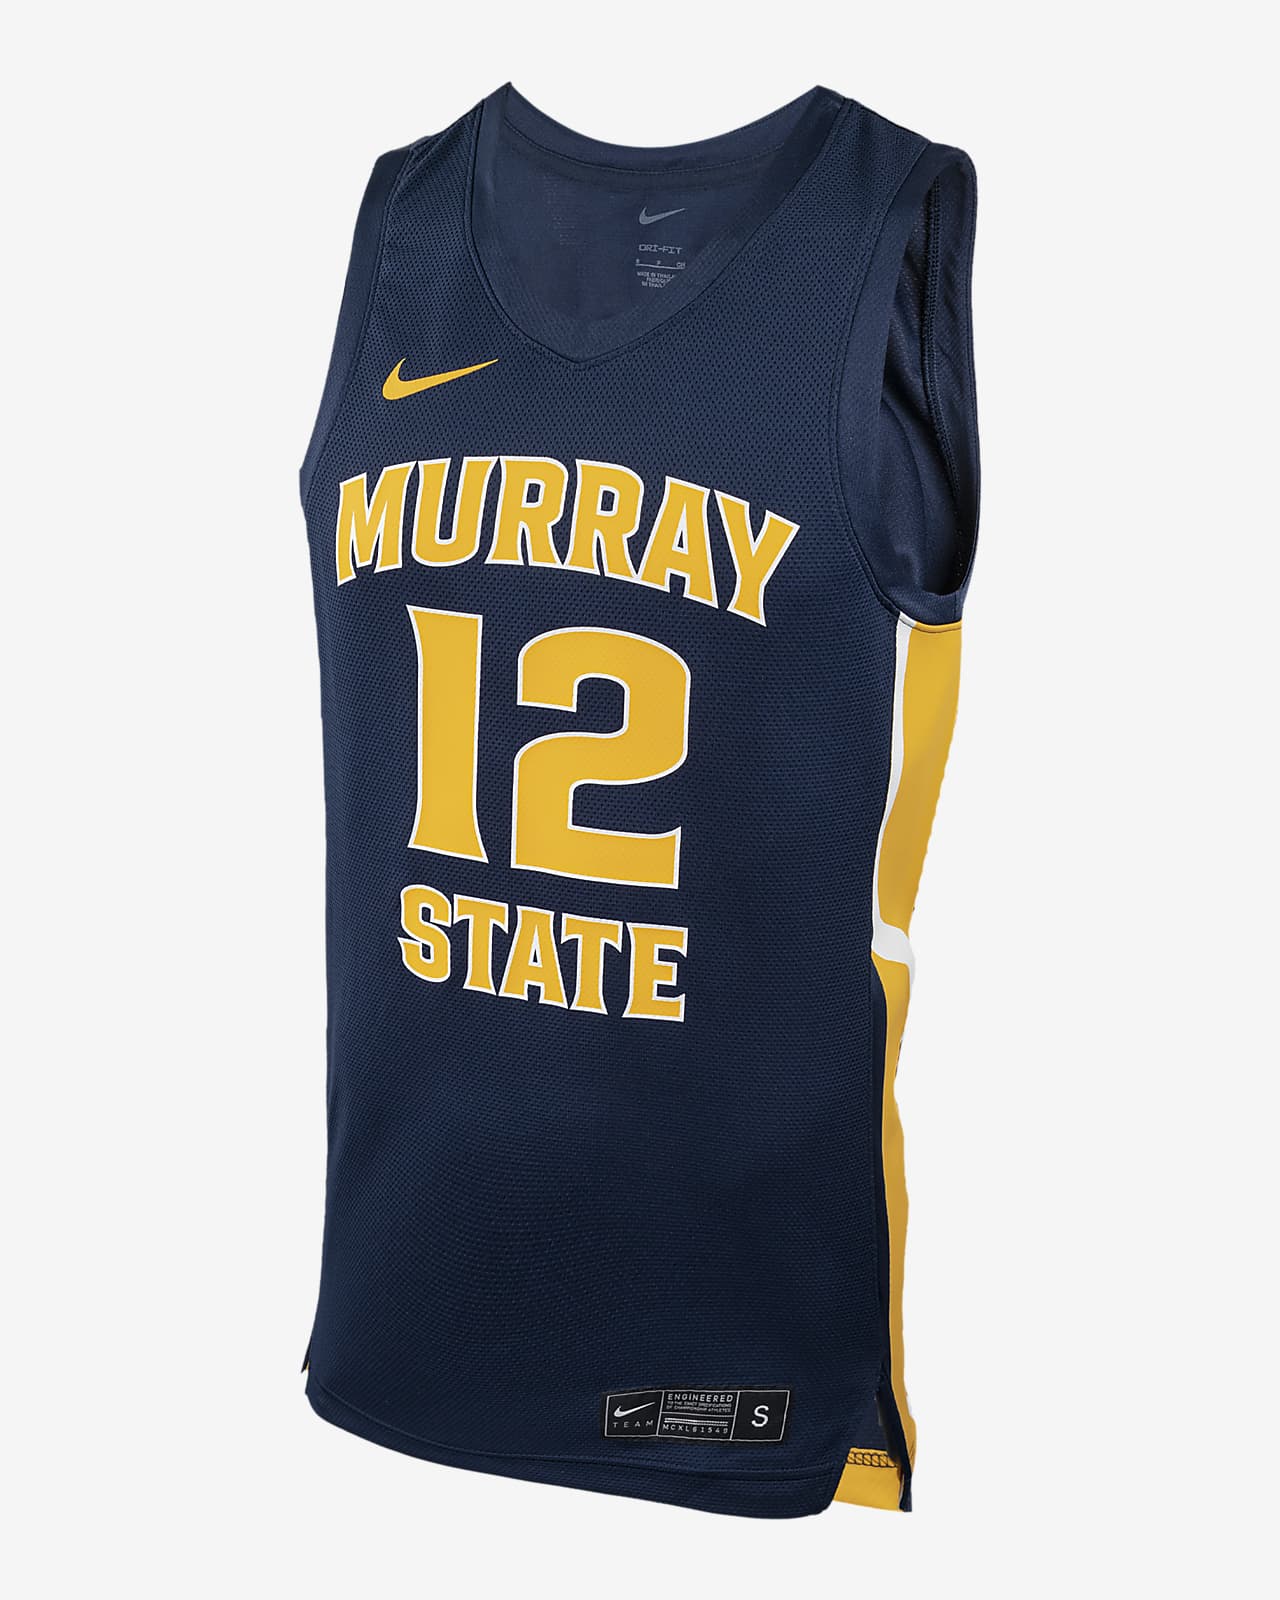 Jersey de Nike College para Morant Murray State. Nike .com